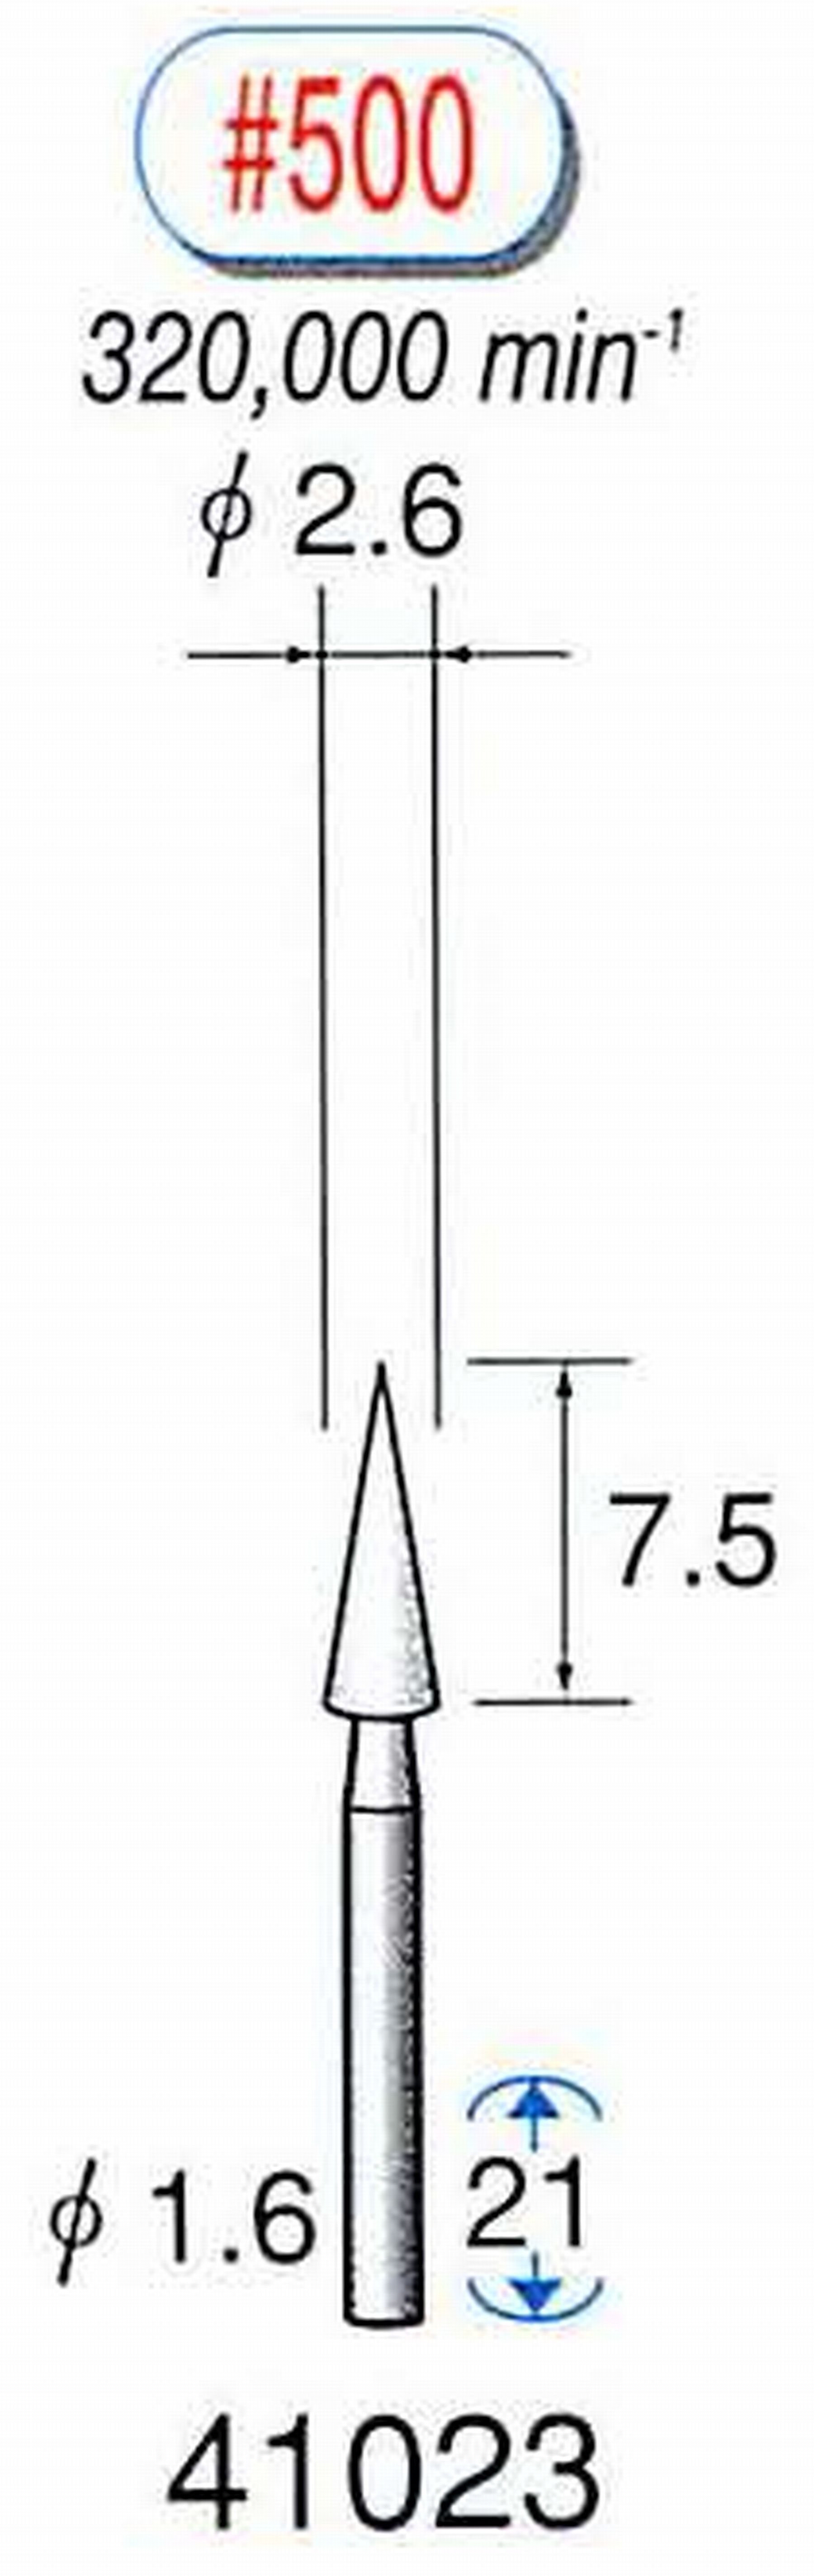 ナカニシ/NAKANISHI ミニチュア軸付砥石(WA砥粒) 軸径(シャンク) φ1.6mm 41023